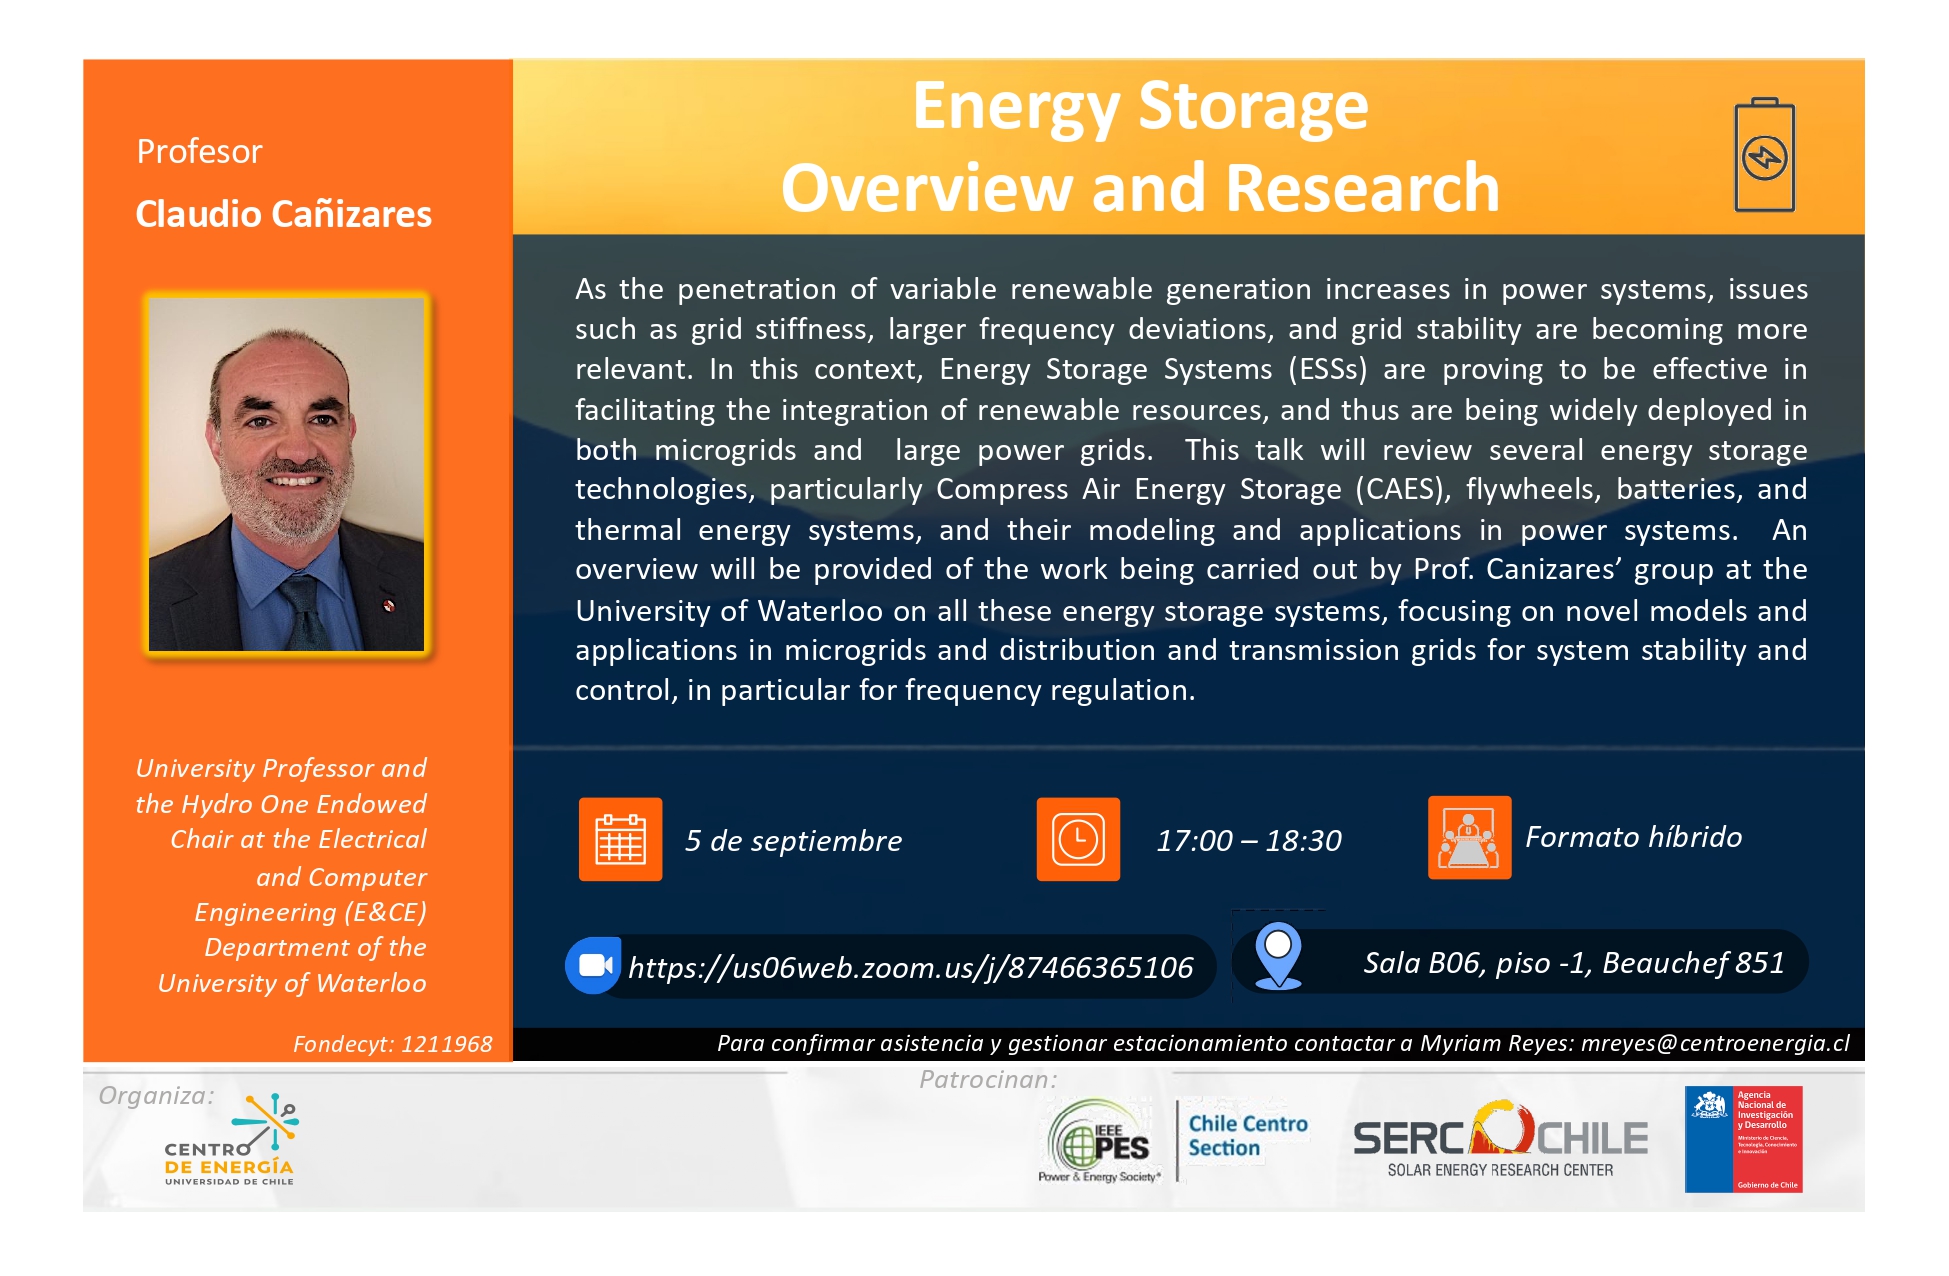 El Pasado 5 De Septiembre El Prof. Claudio Cañizares Y La Charla: Energy Storage Overview An Research.